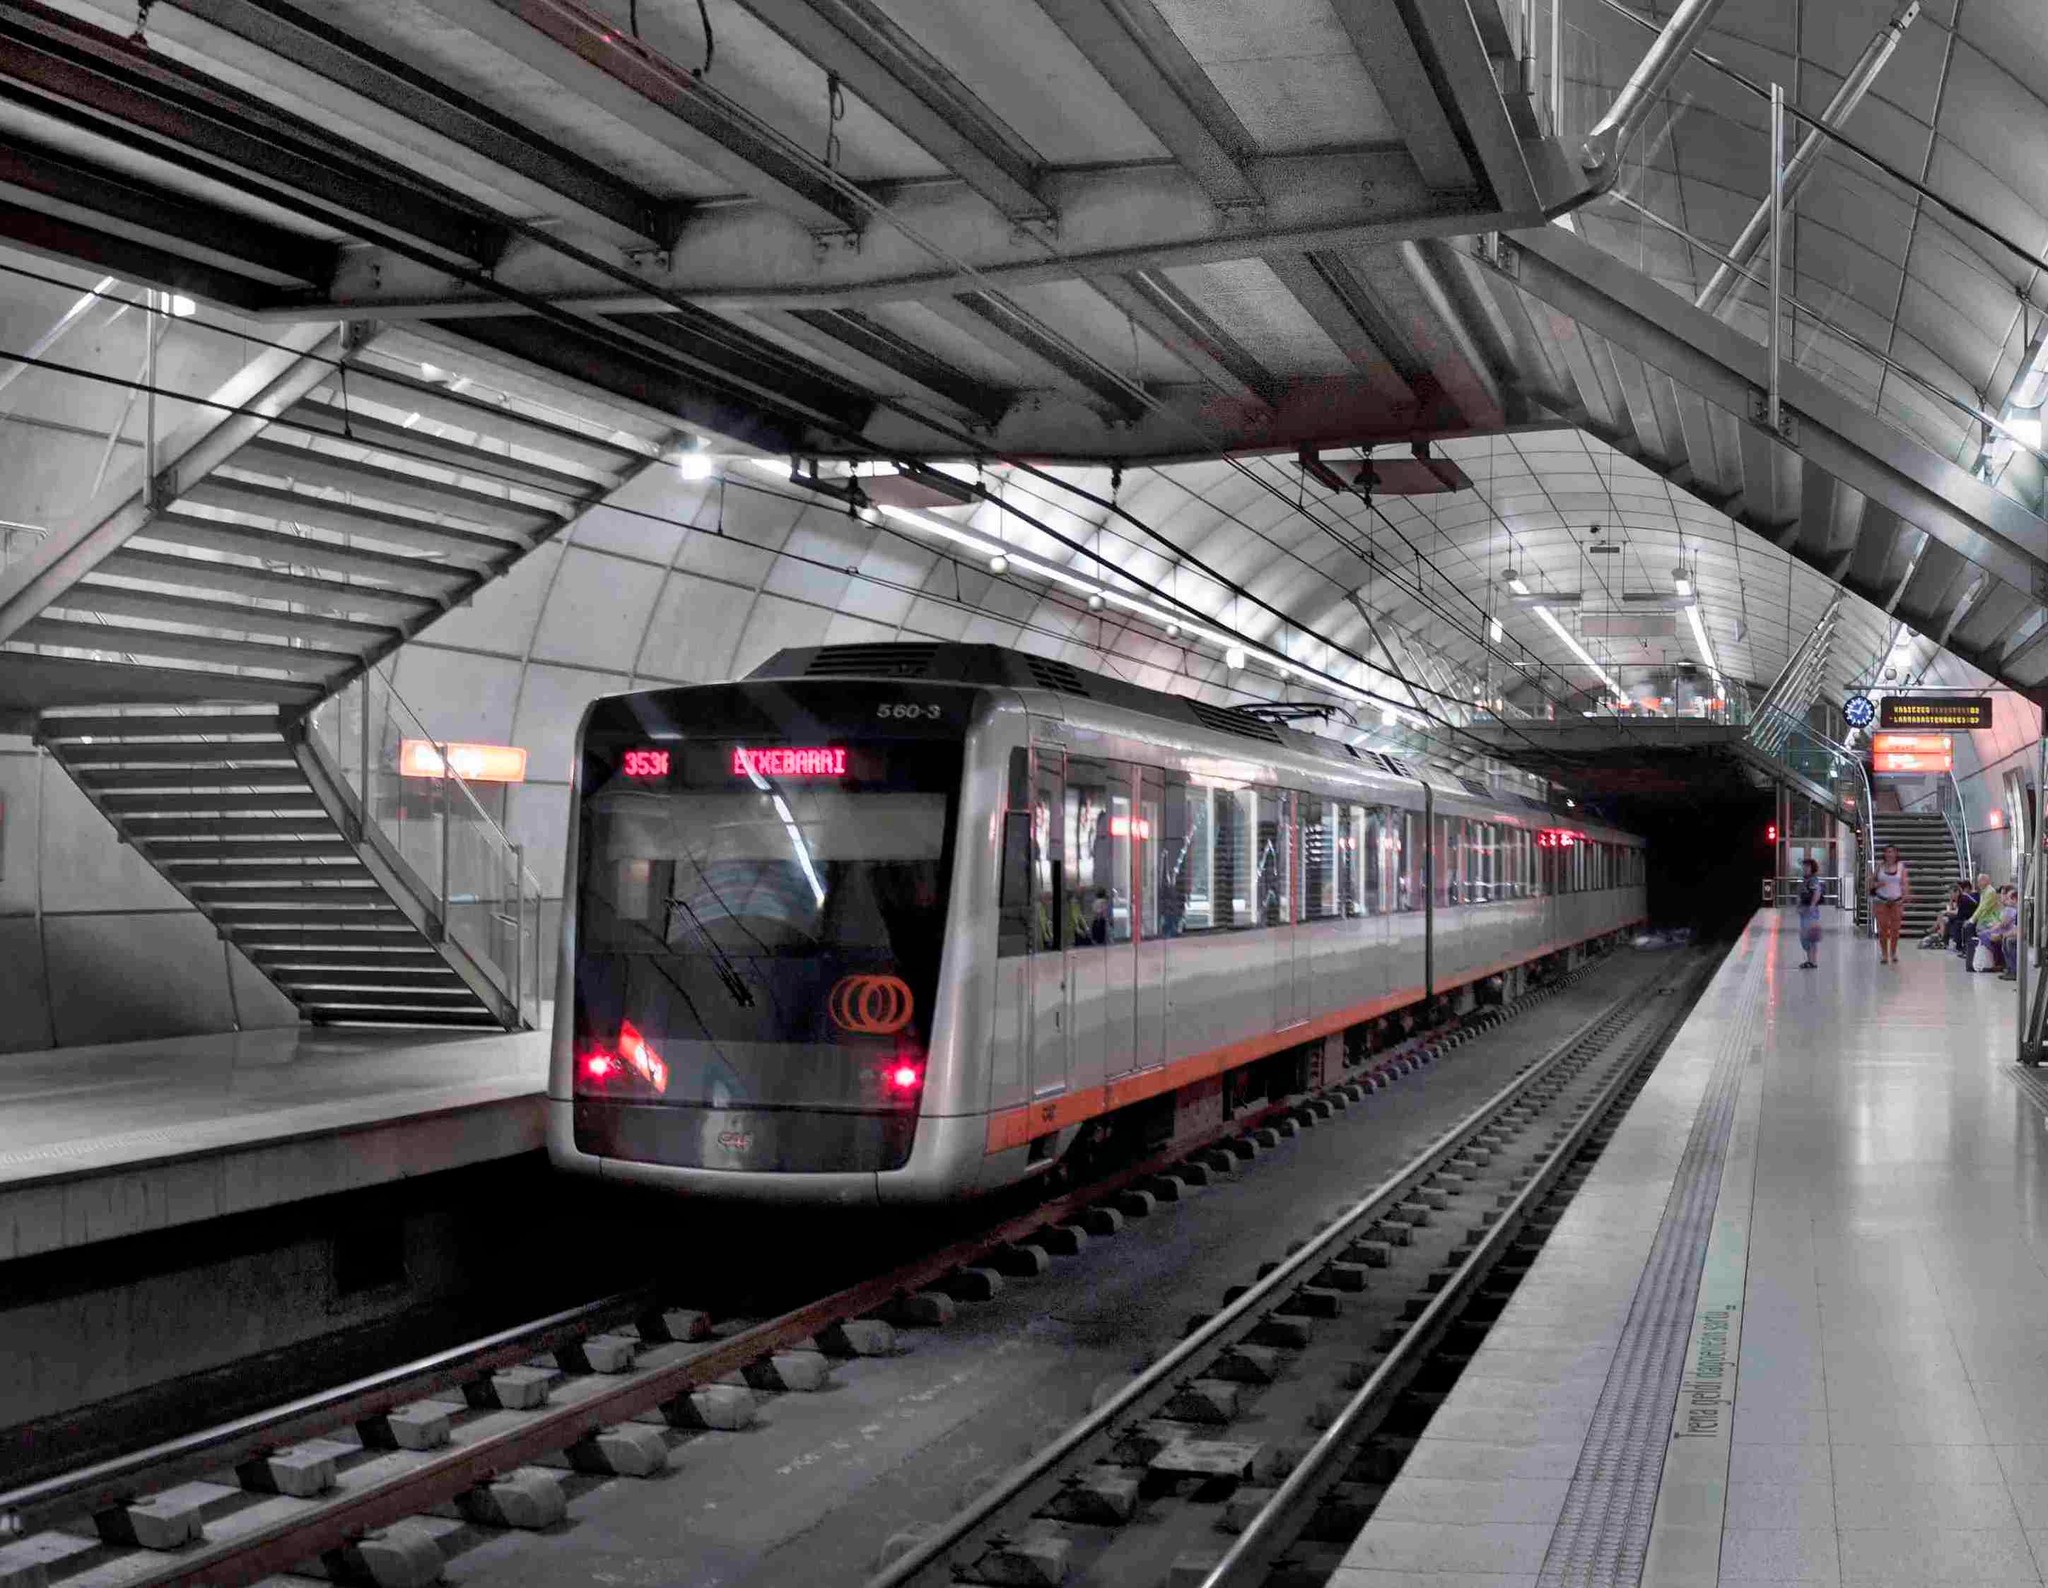 1996. El metro más moderno del mundo